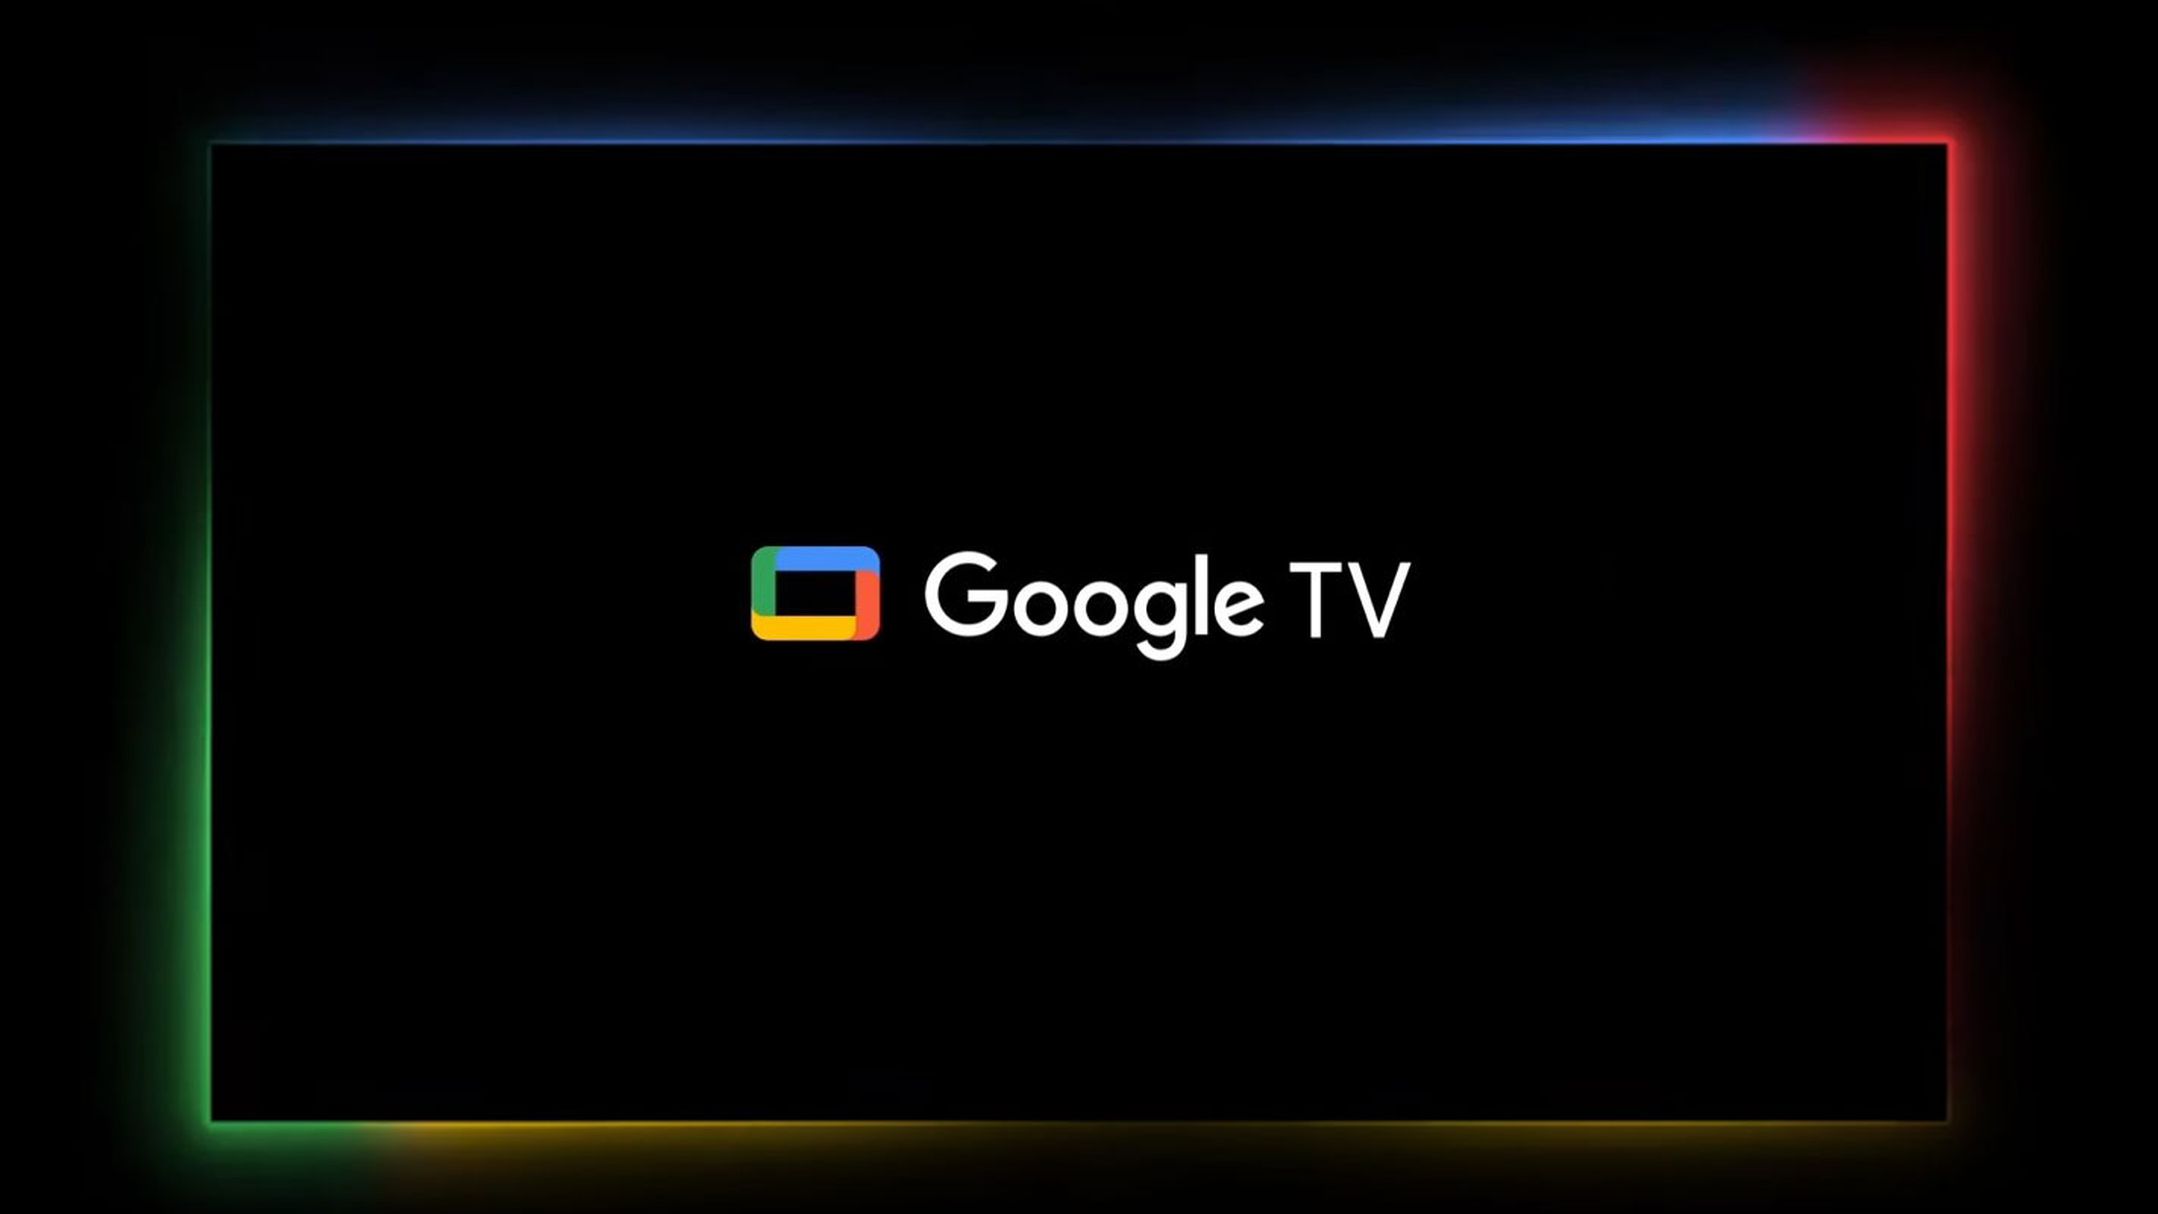 Google TV chega ao Brasil e substituí o Play Filmes e TV